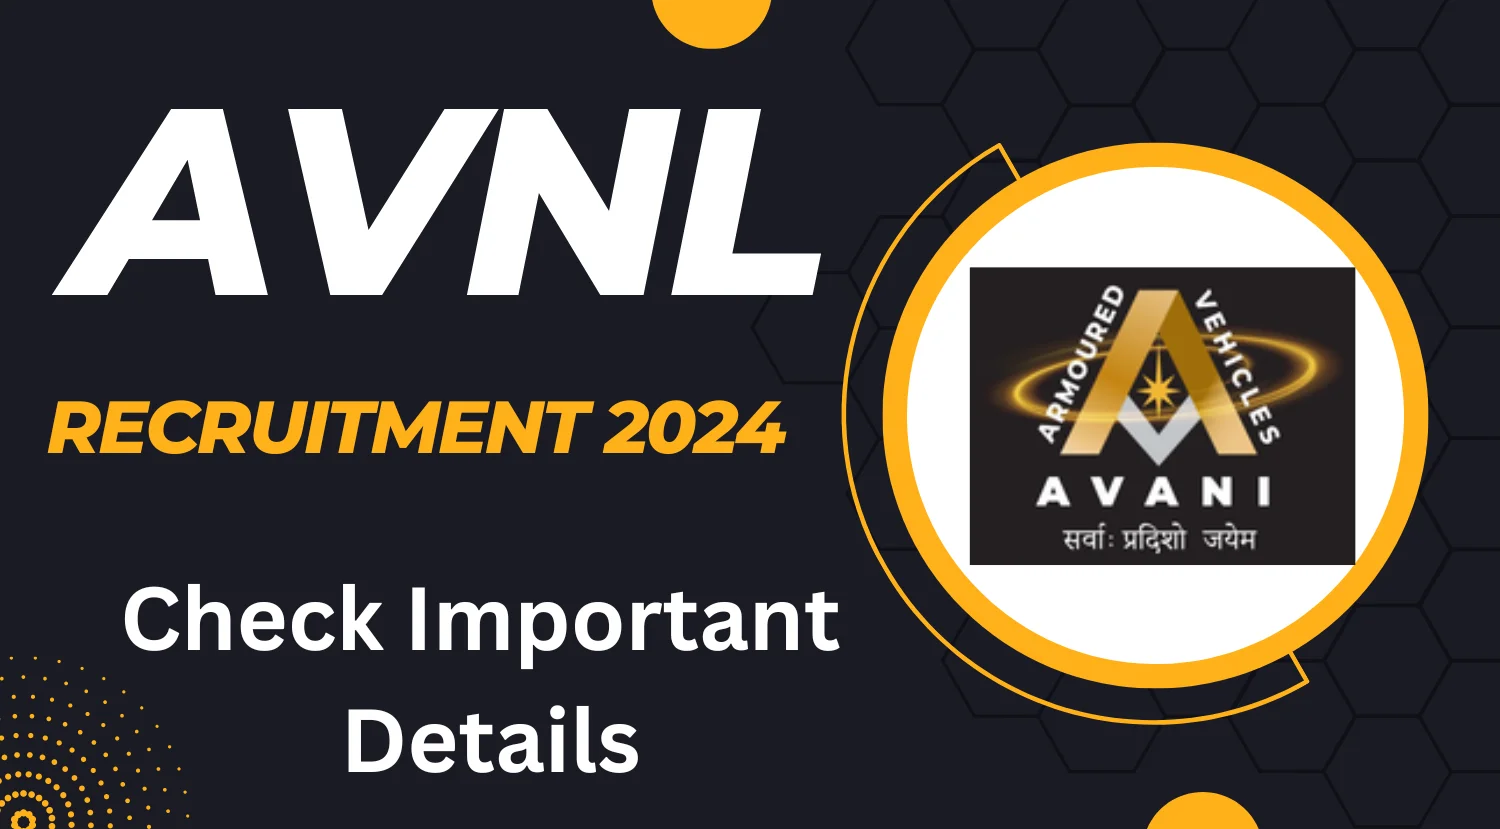 AVNL Recruitment 2024 Notification